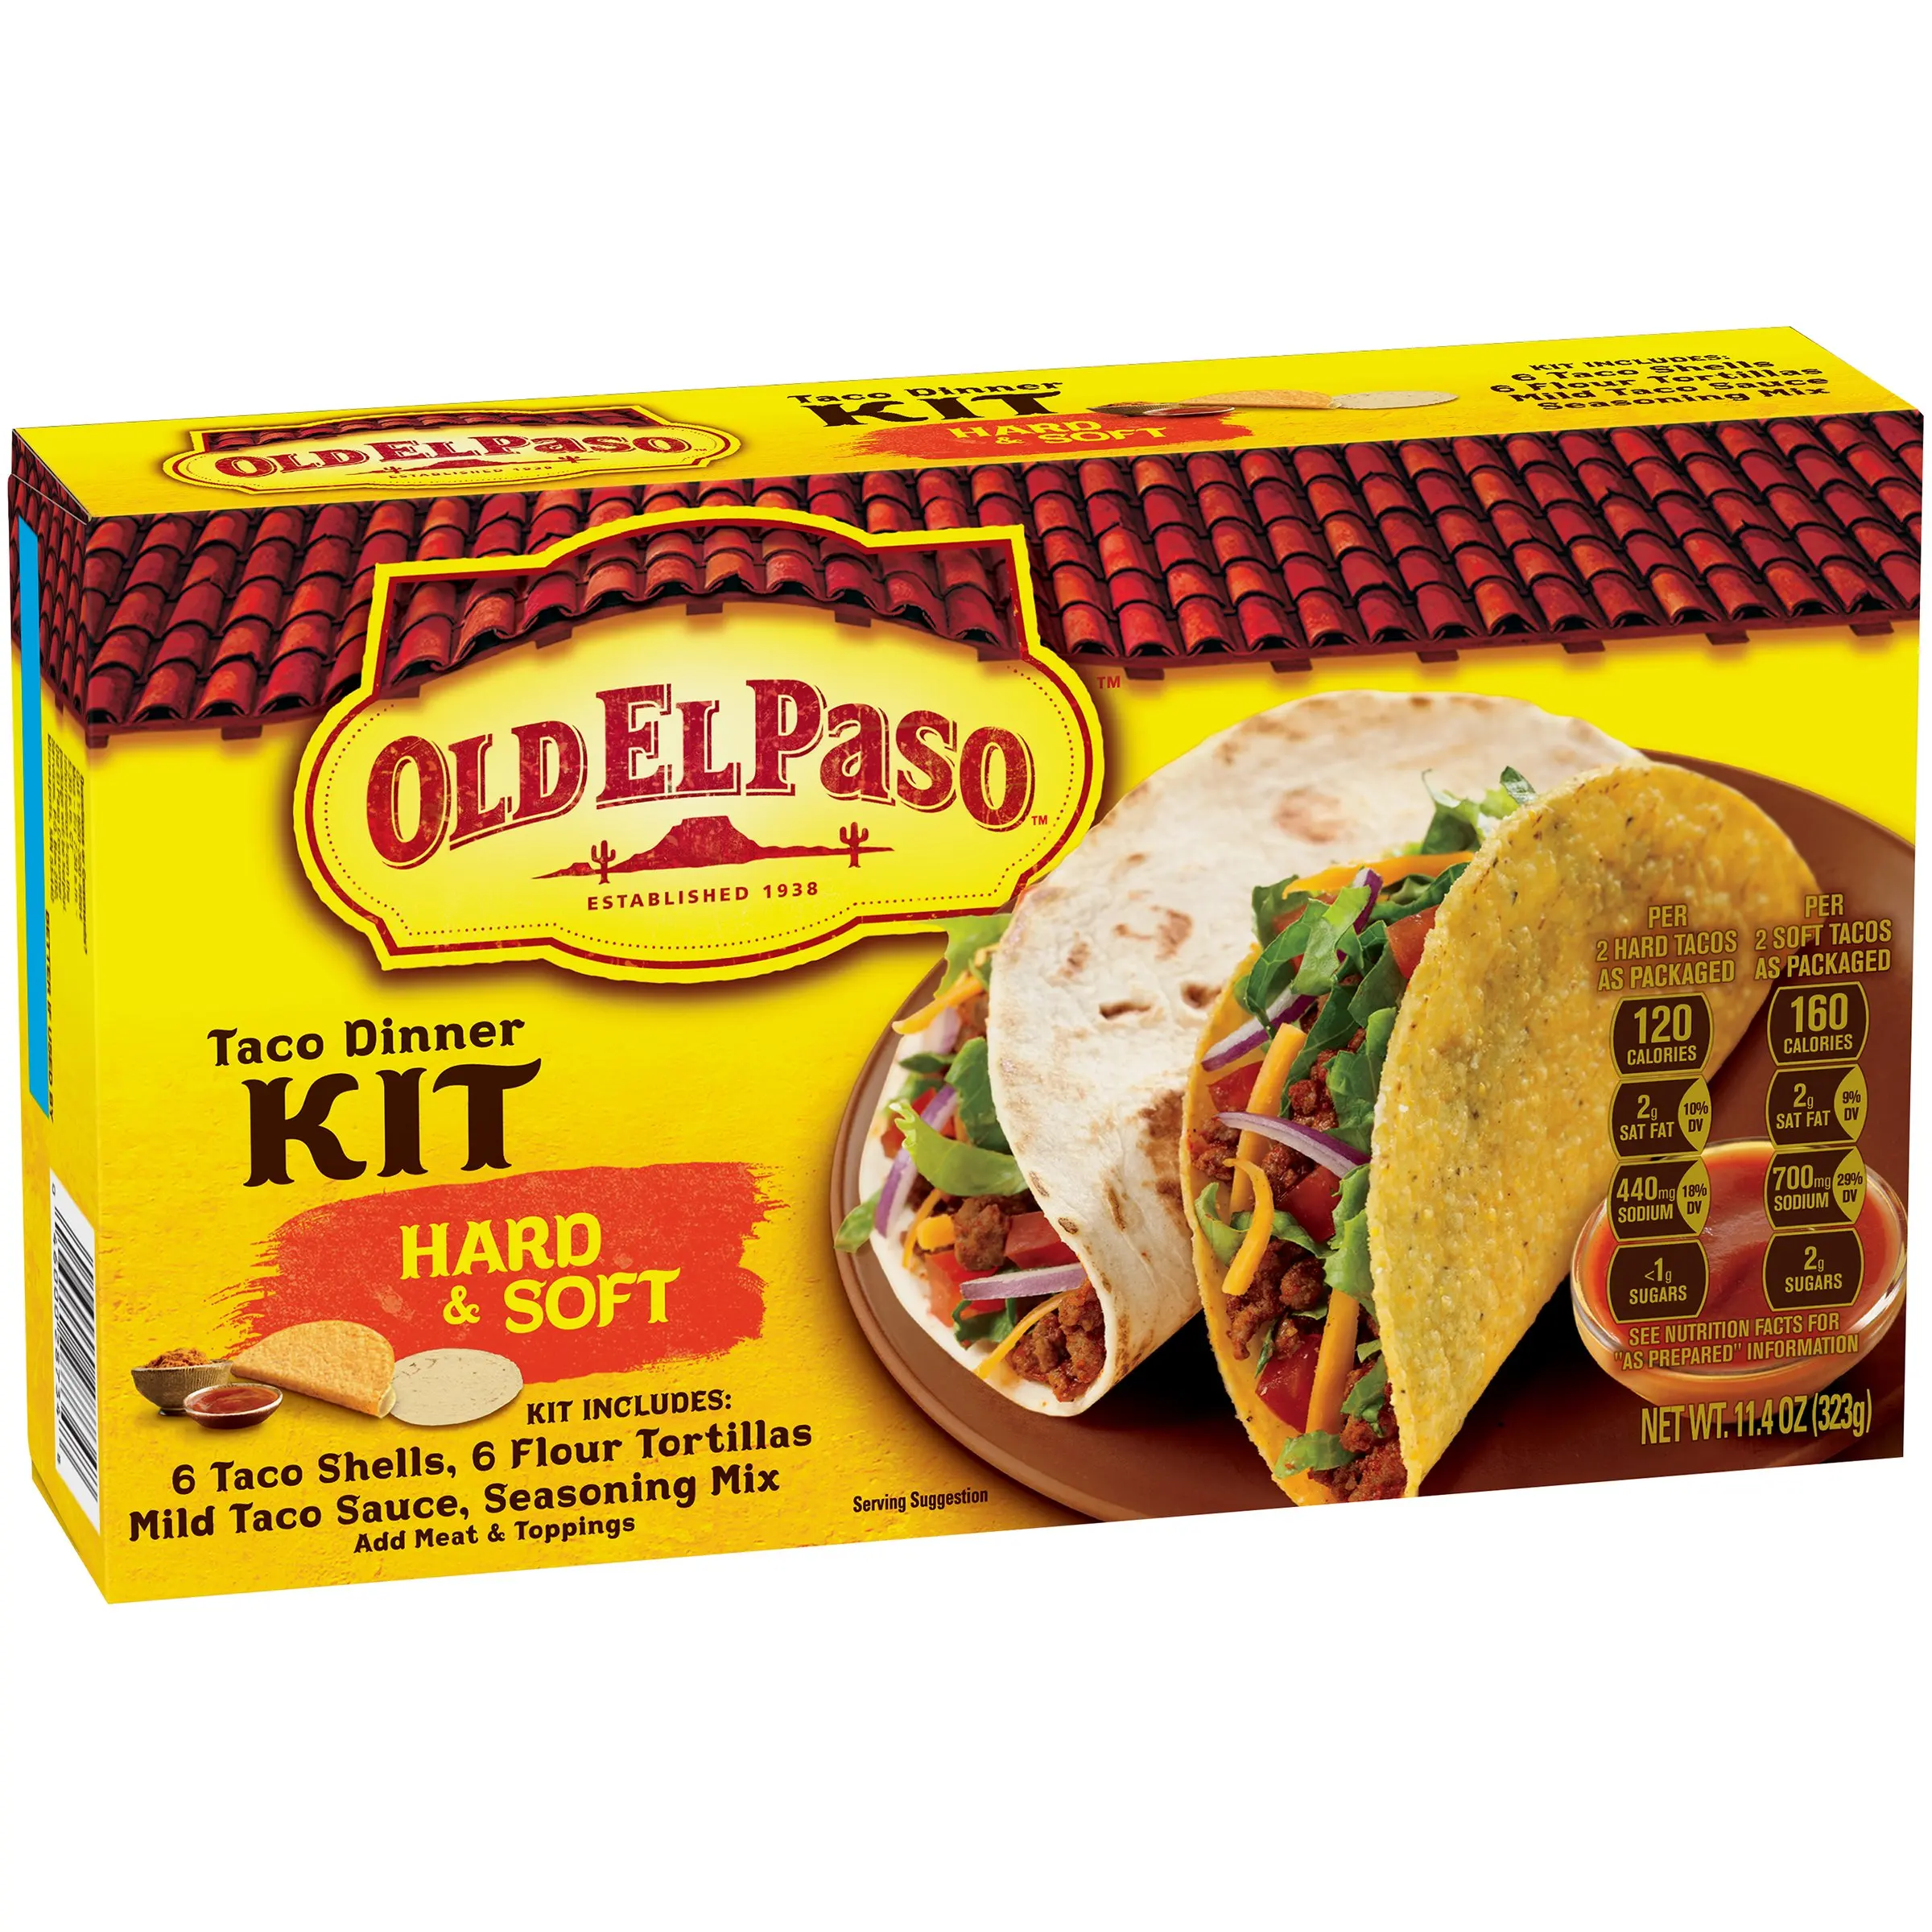 Old El Paso Hard & Soft Taco Dinner Kit 11.4 oz Box. 